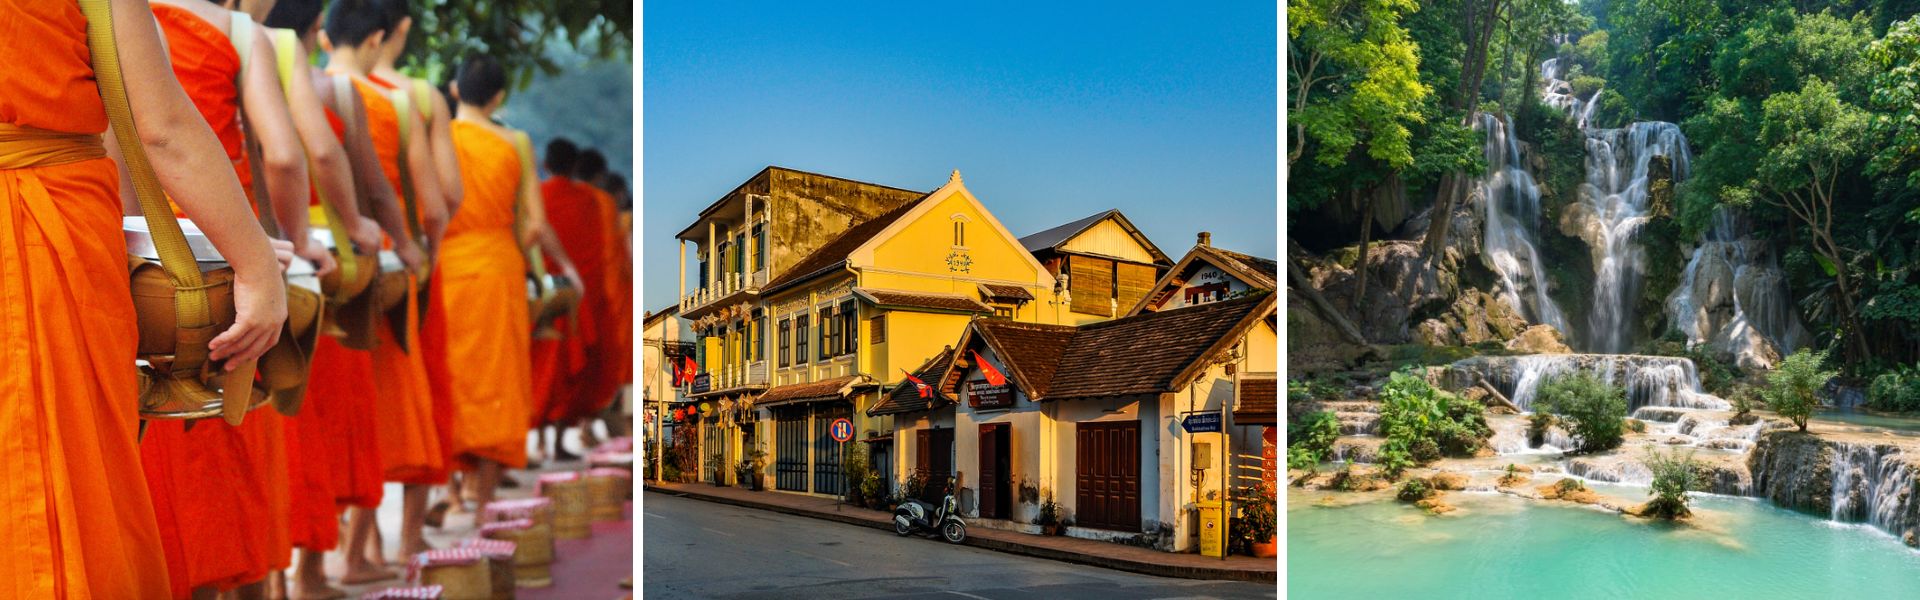 Conselhos de viagem úteis para Luang Prabang